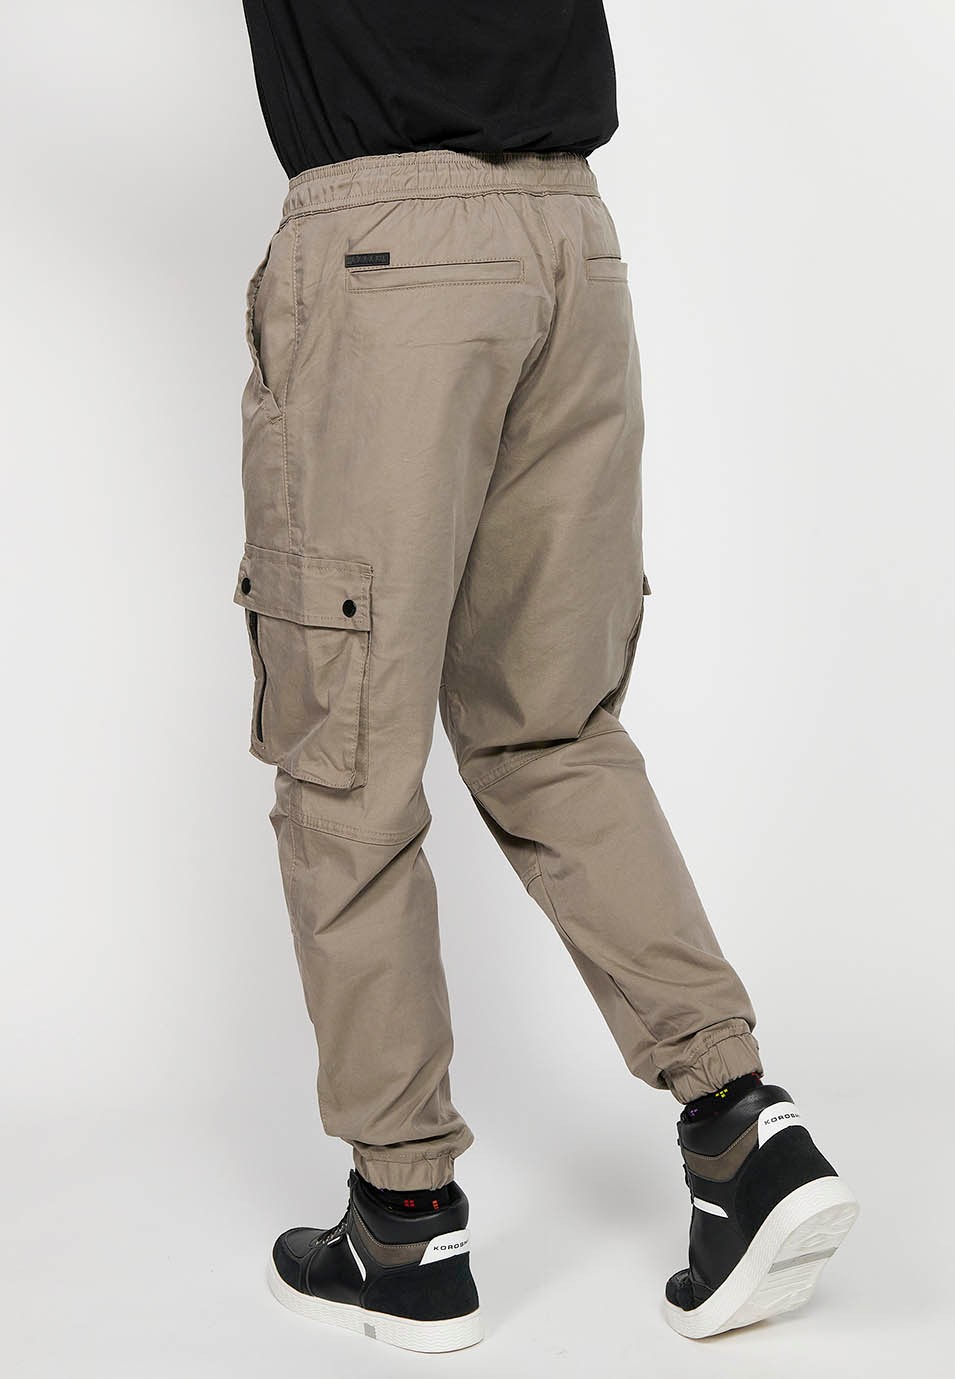 Pantalons jogger càrrec amb Cintura engomada amb cordó i Butxaques, dos laterals amb solapa de Color Beige per a Home